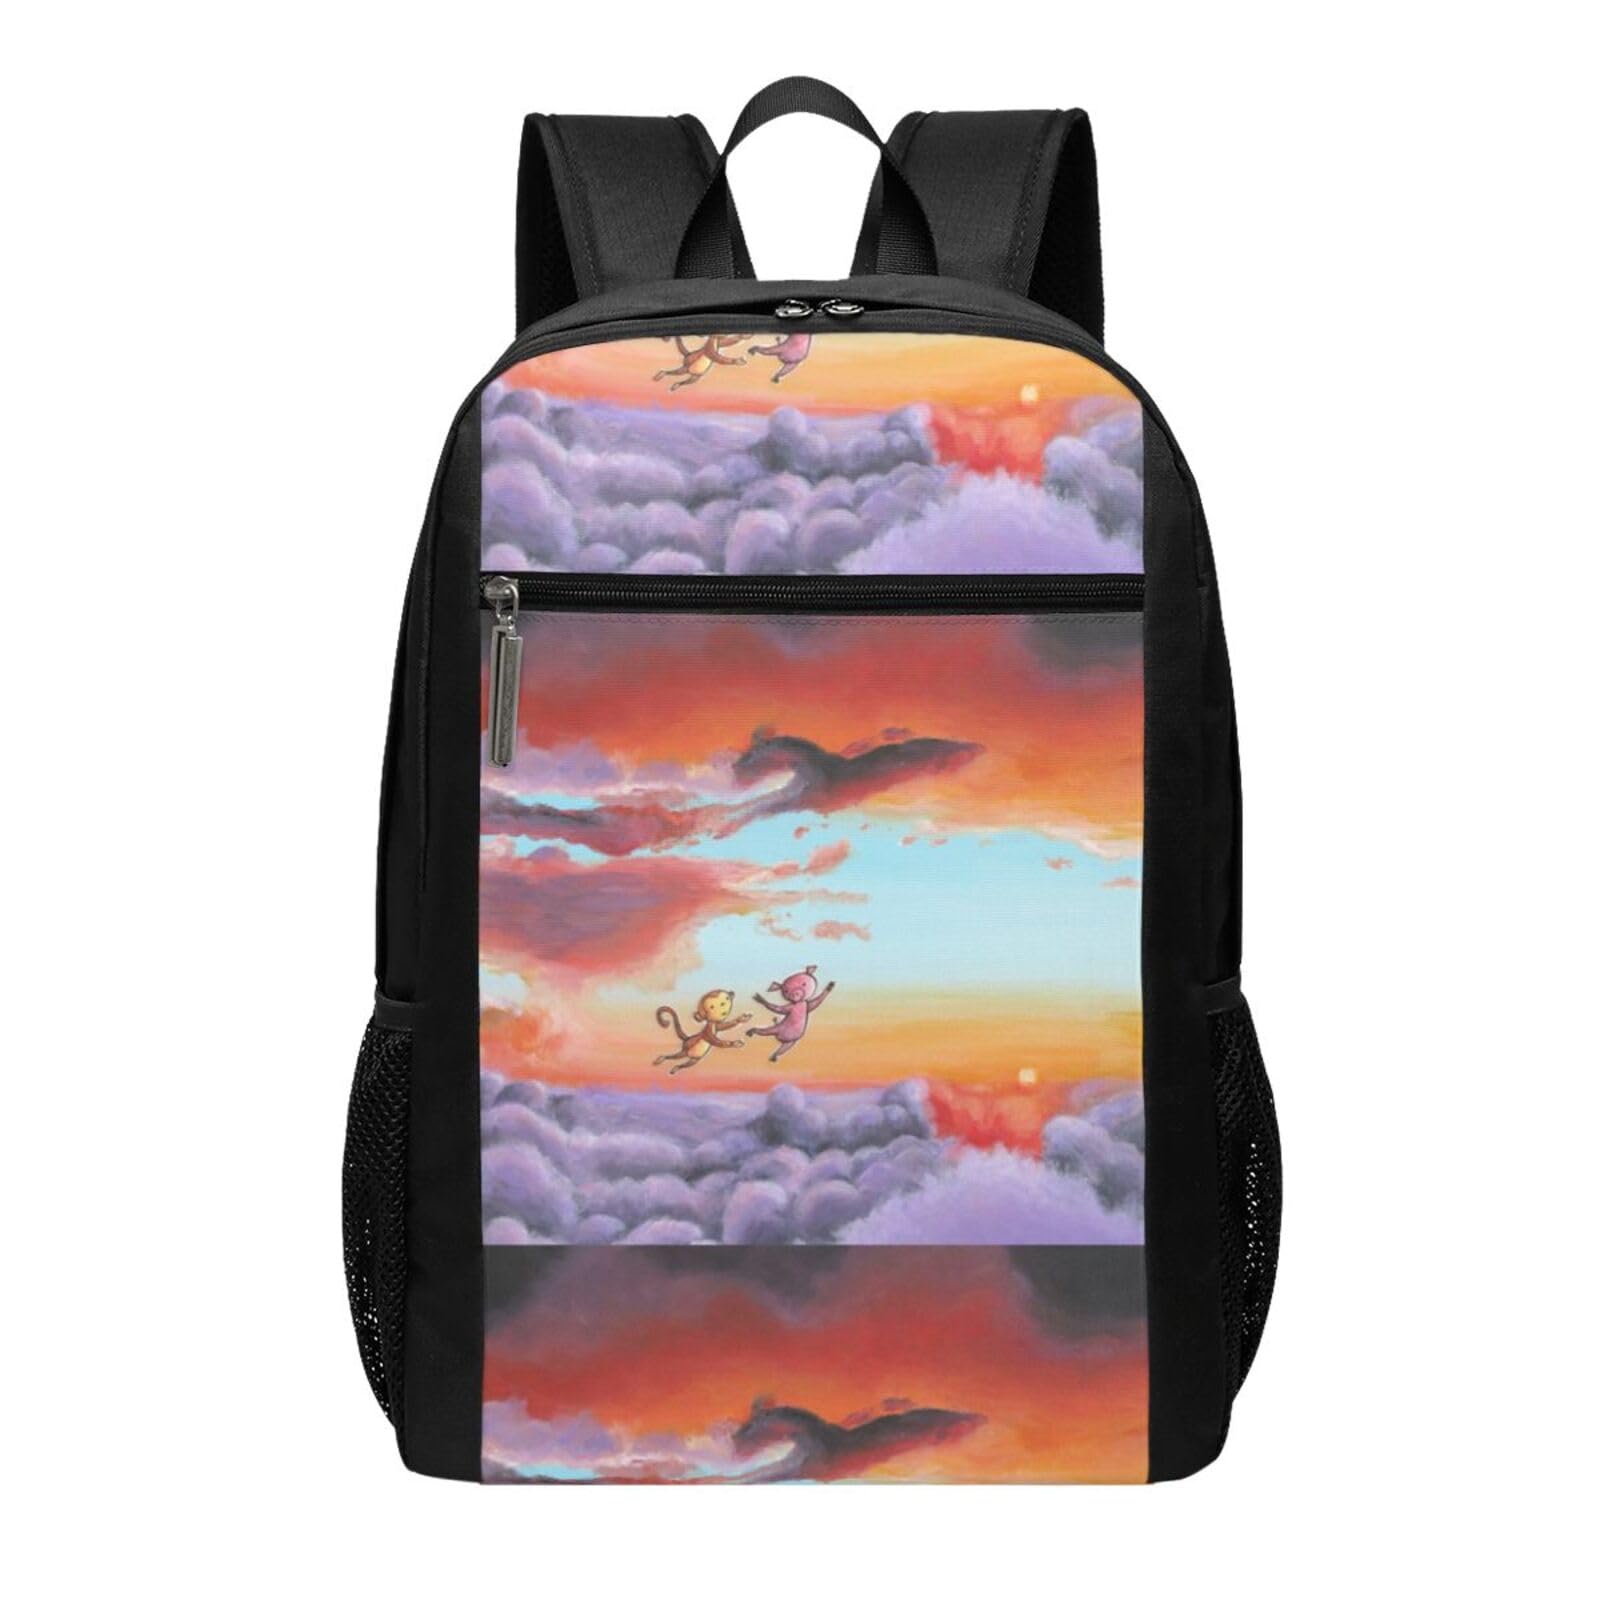 送料無料FURLOU Sky monkey and pig Large Backpack Laptop Casual Travel Daypack Bag for Men Women Lightweight Camping Bag